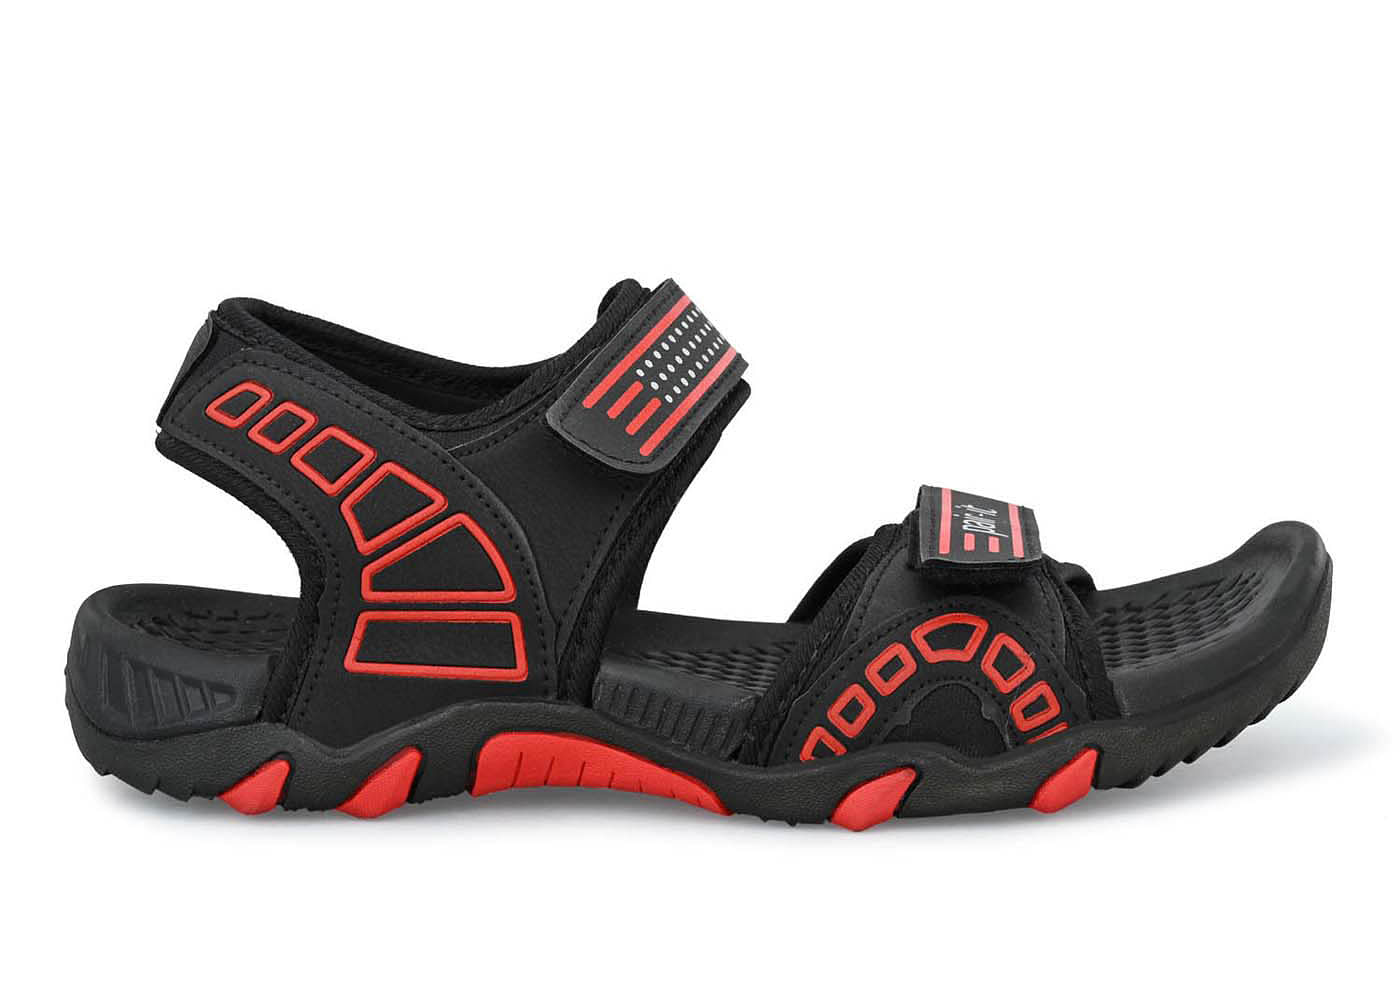 Pair-it Mn Sandals - Black/Red-UN-Mn-Sp-Sandal005